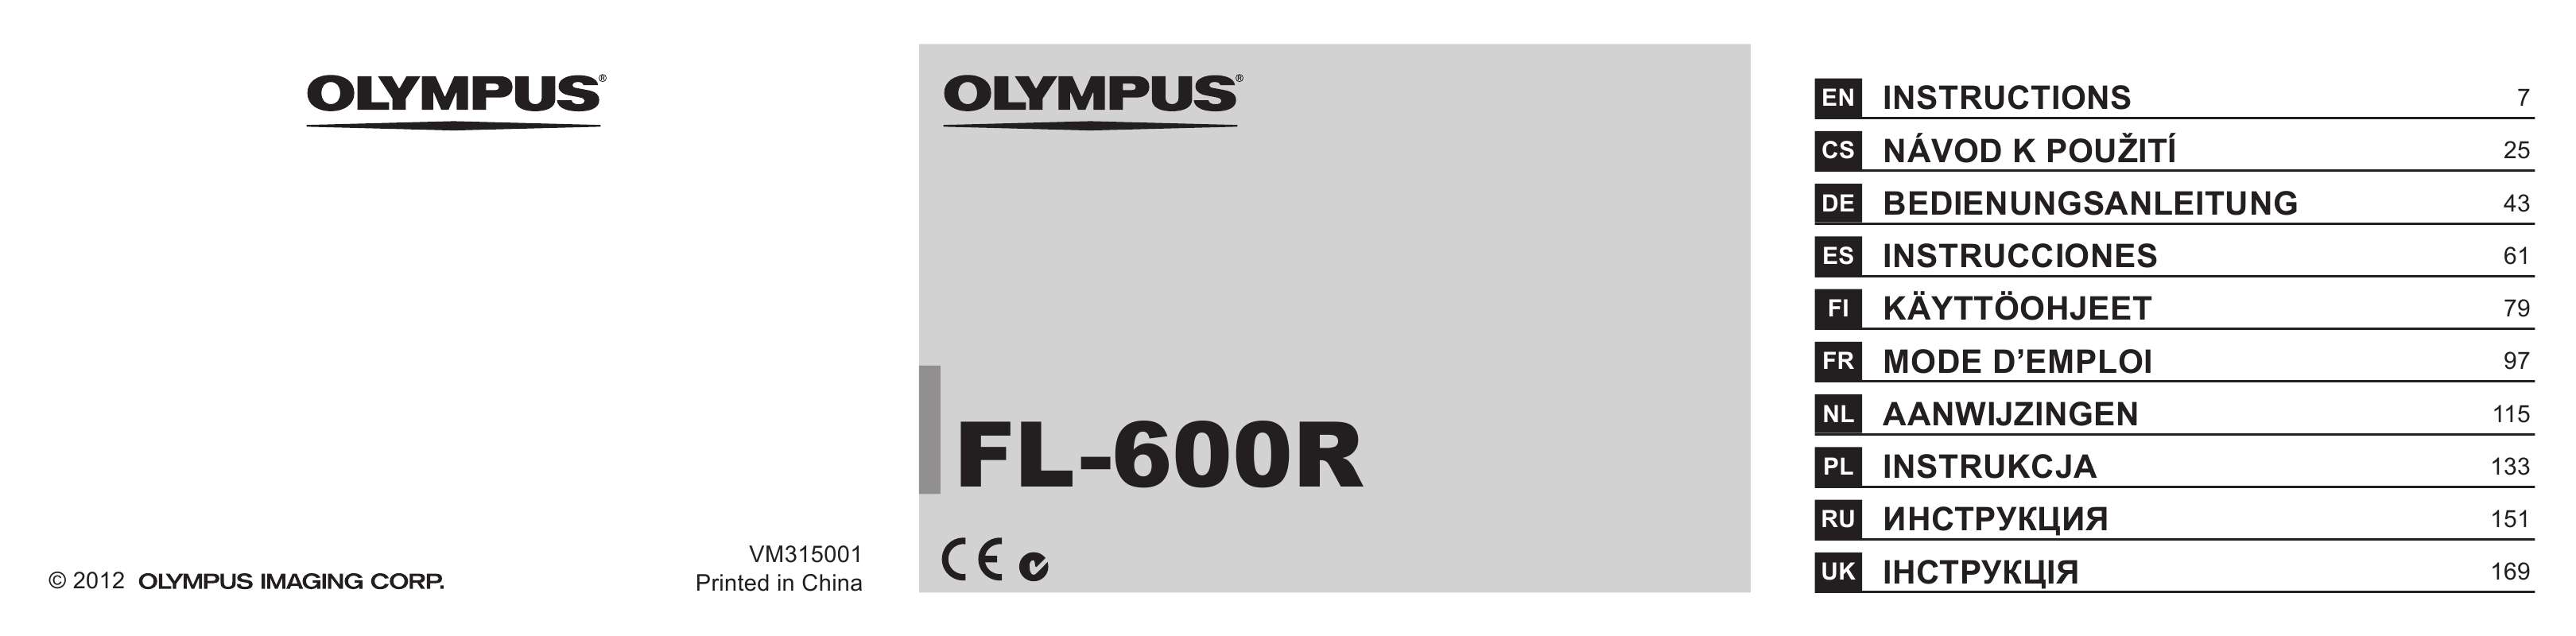 Guide utilisation OLYMPUS FL-600R  de la marque OLYMPUS